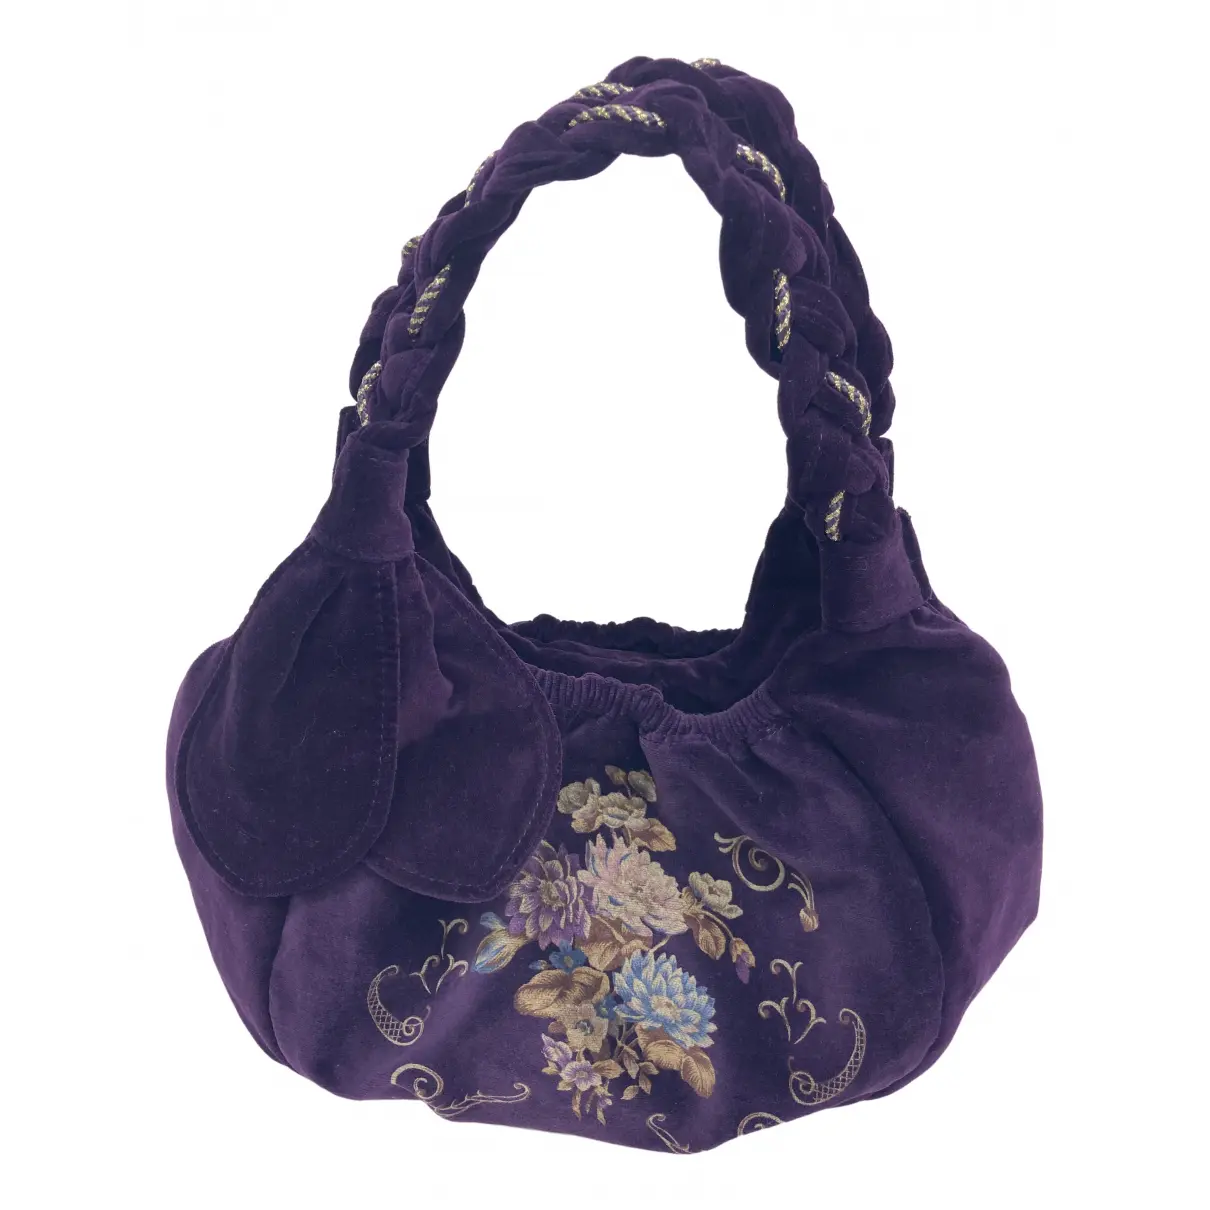 Cloth handbag Anna Sui